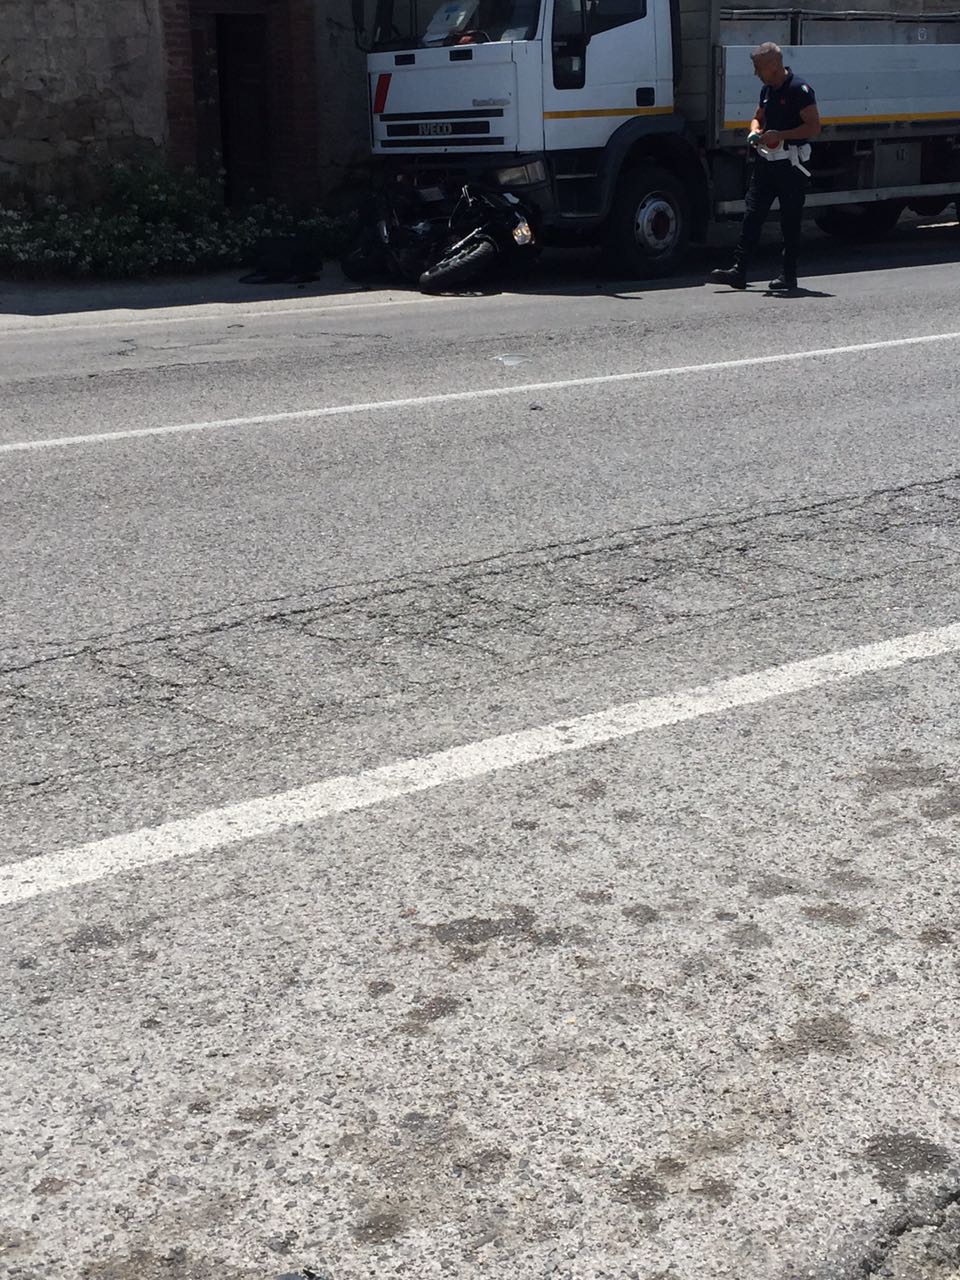 Benevento| Statale Appia, scooter contro camion. Ferito 35enne